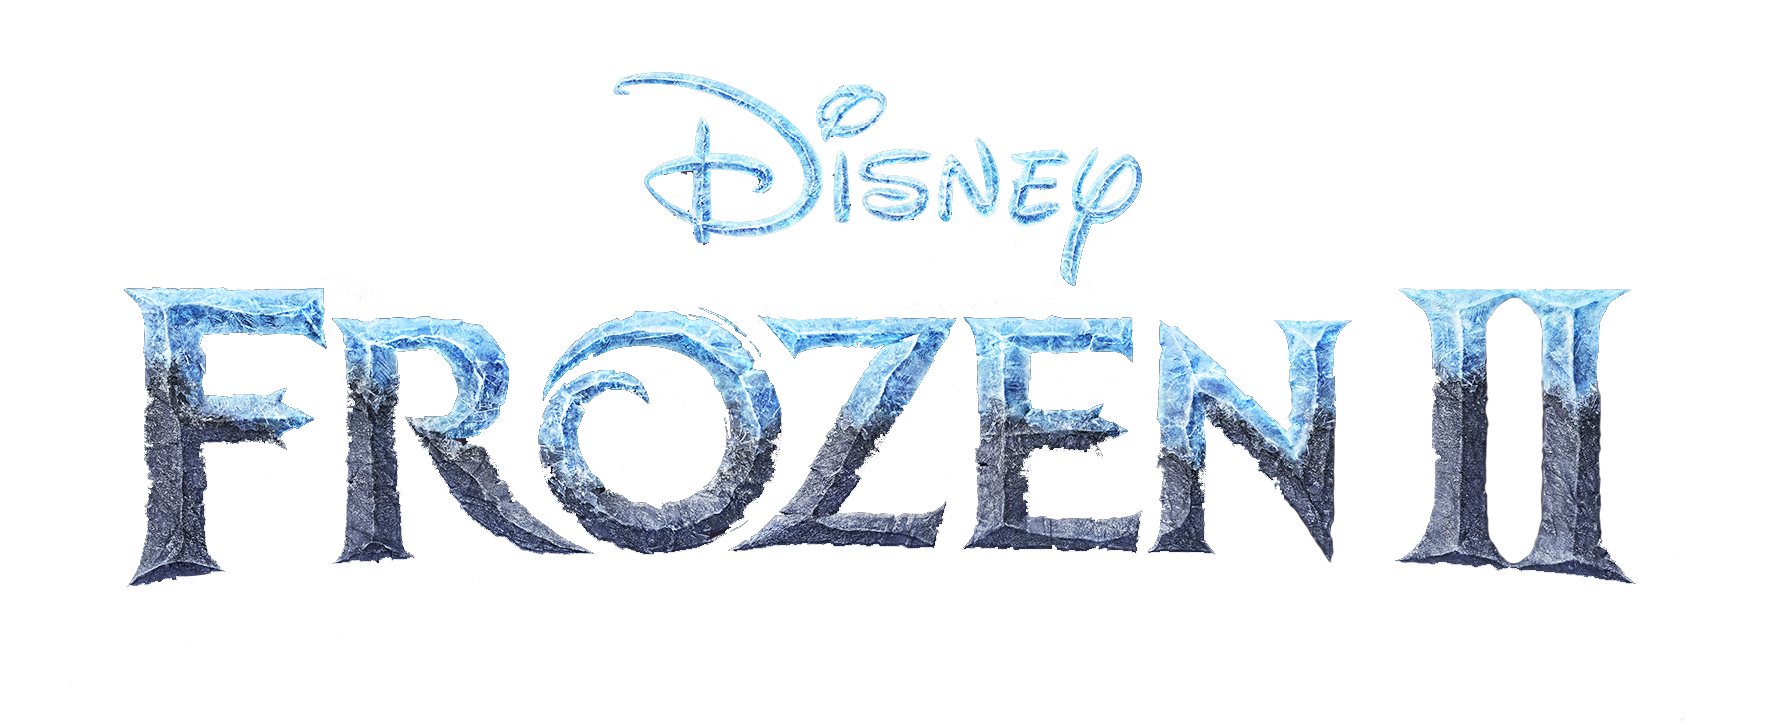 Resultado de imagen para frozen 2 logo